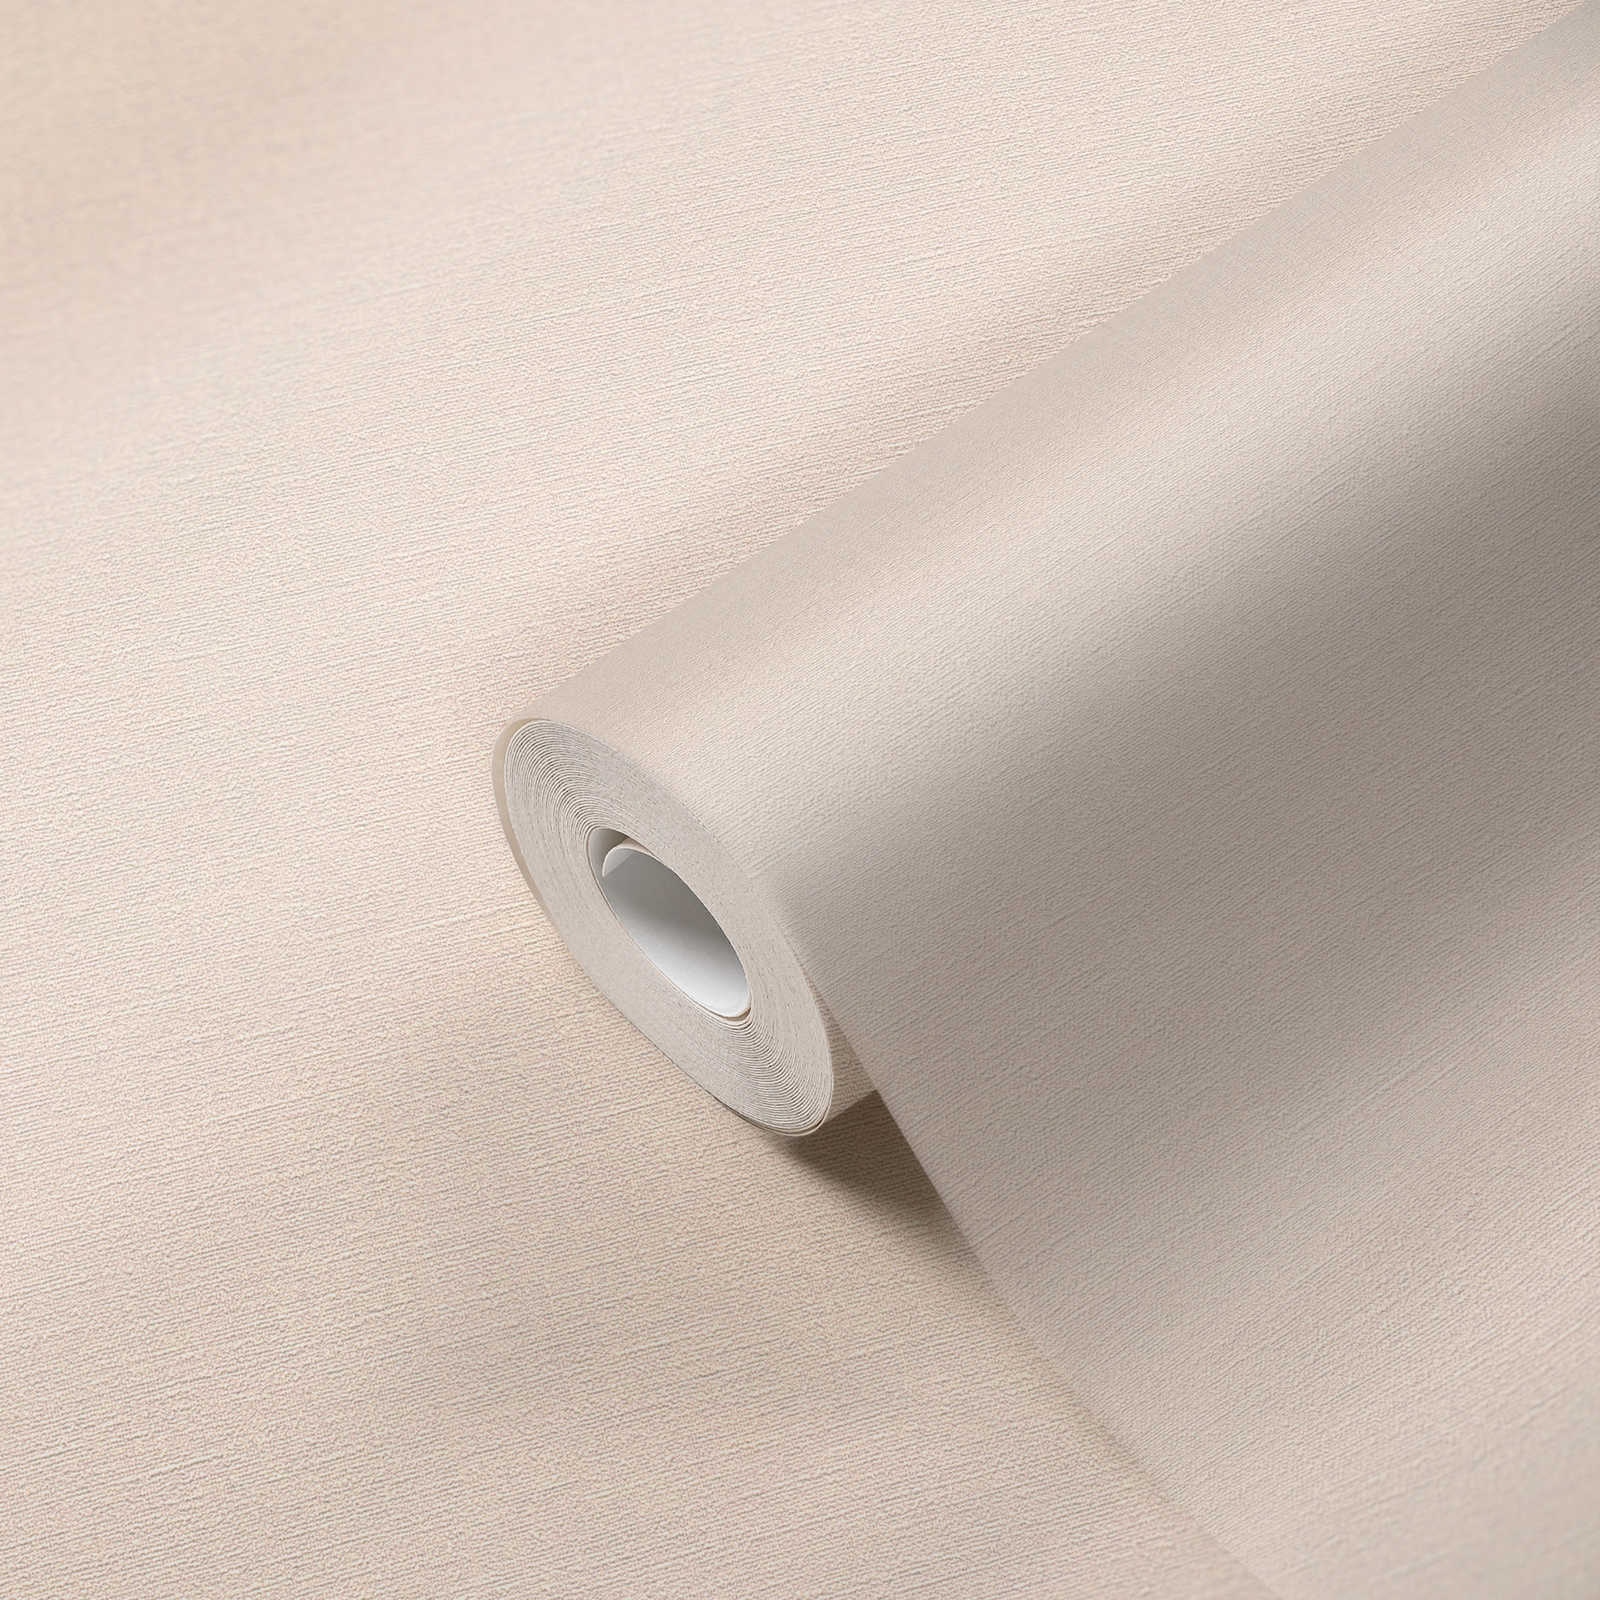             Light pink wallpaper plain & matte with texture pattern
        